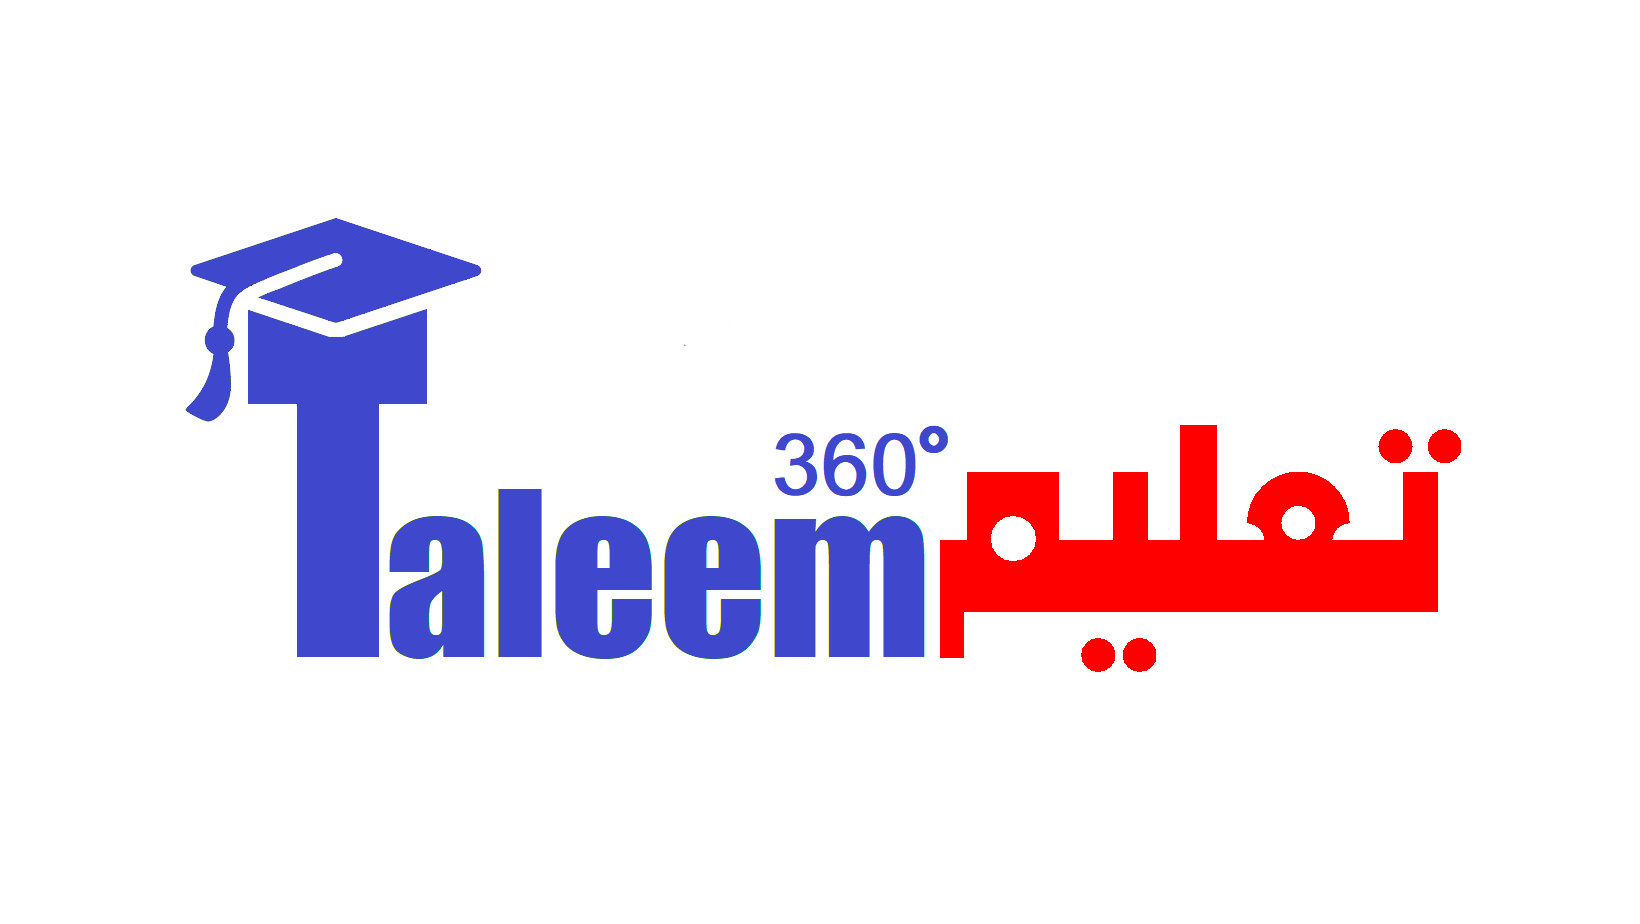 Taleem360.com - Founded by Qasim Tariq